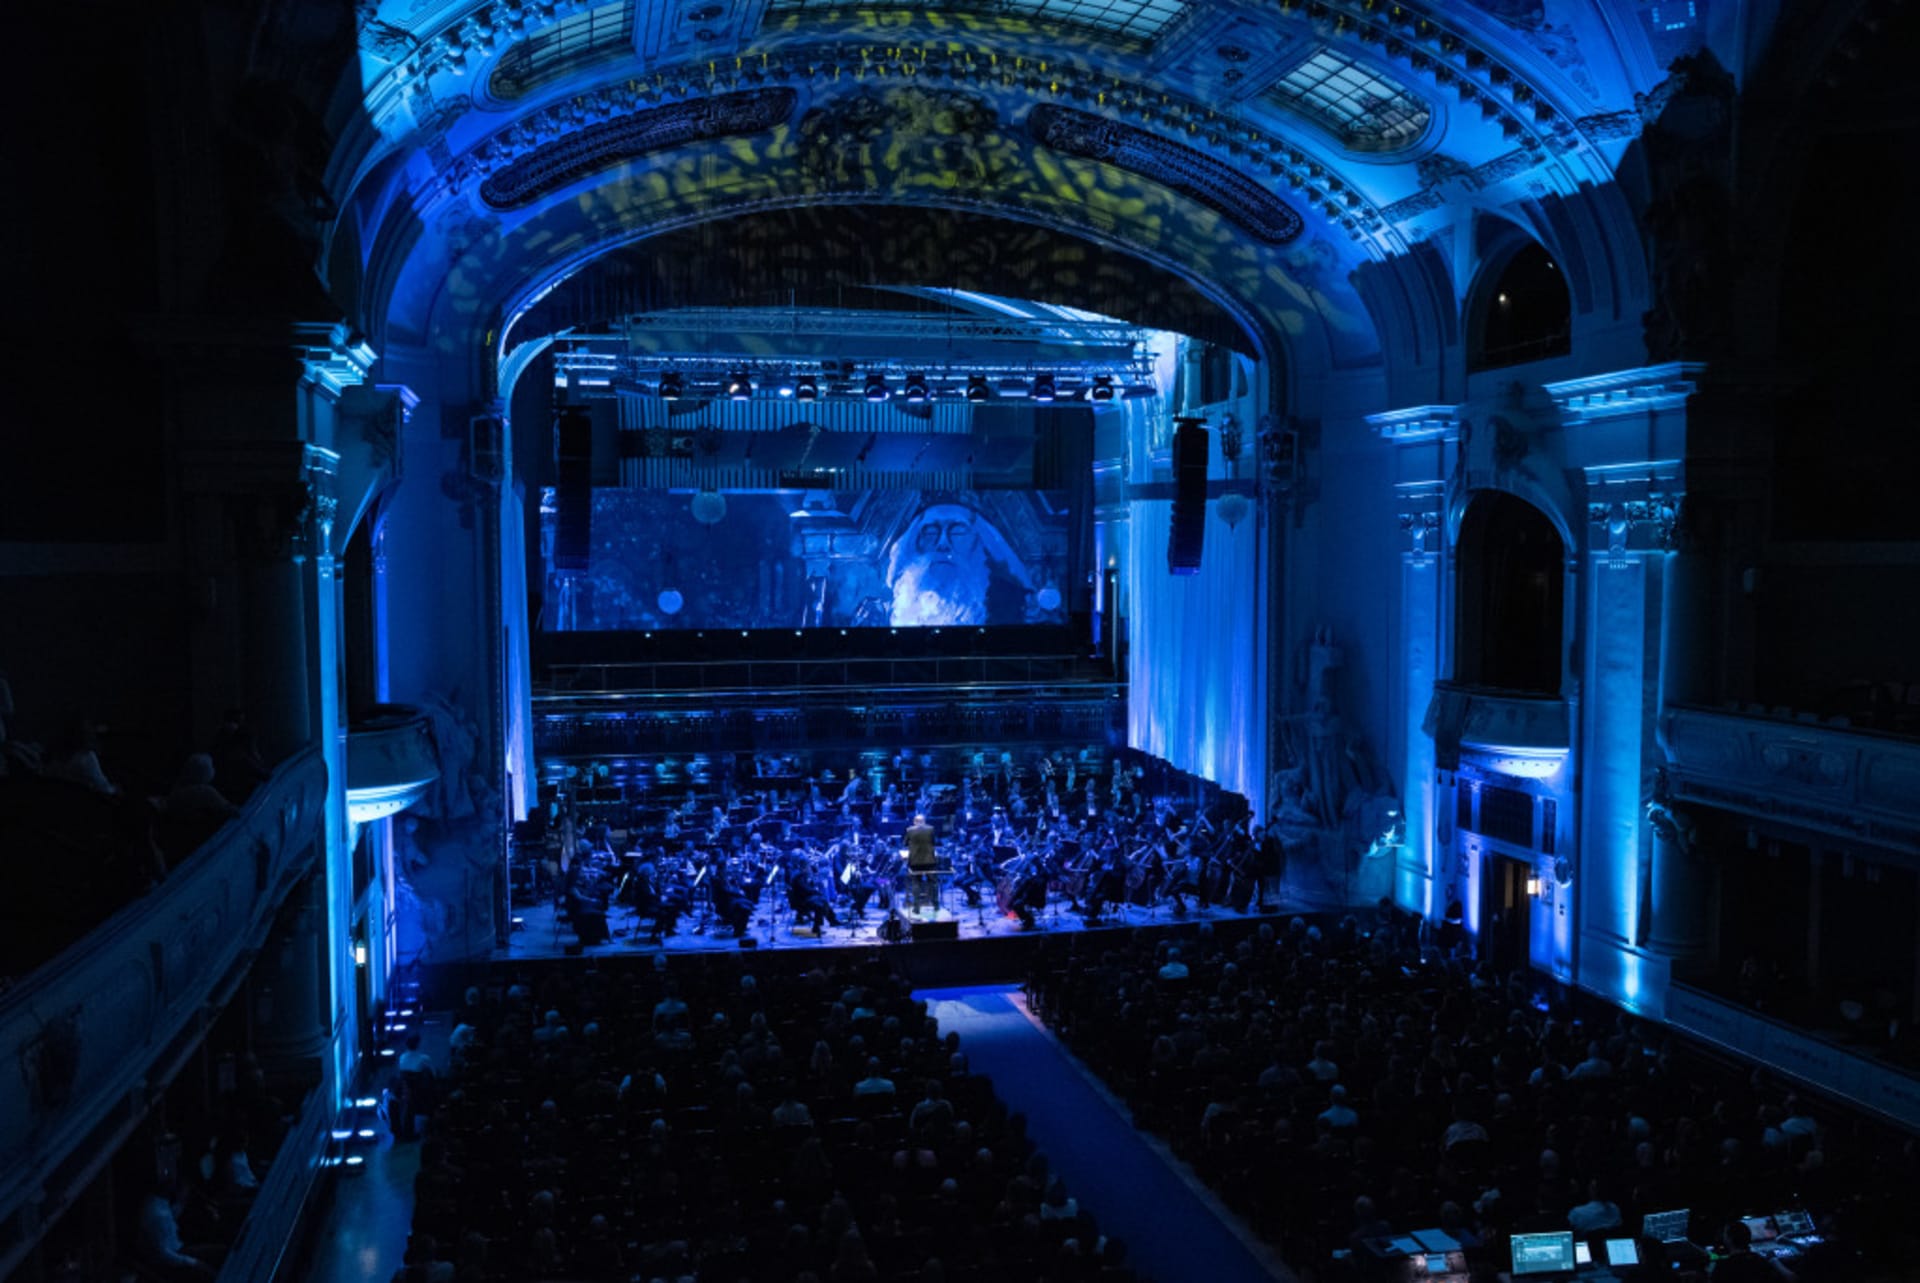 Úvodní Hedwig’s Theme dirigováno jeho orchestrátorem Conradem Popem za doprovodu jedinečných projekcí v průběhu zahajovacího koncertu.